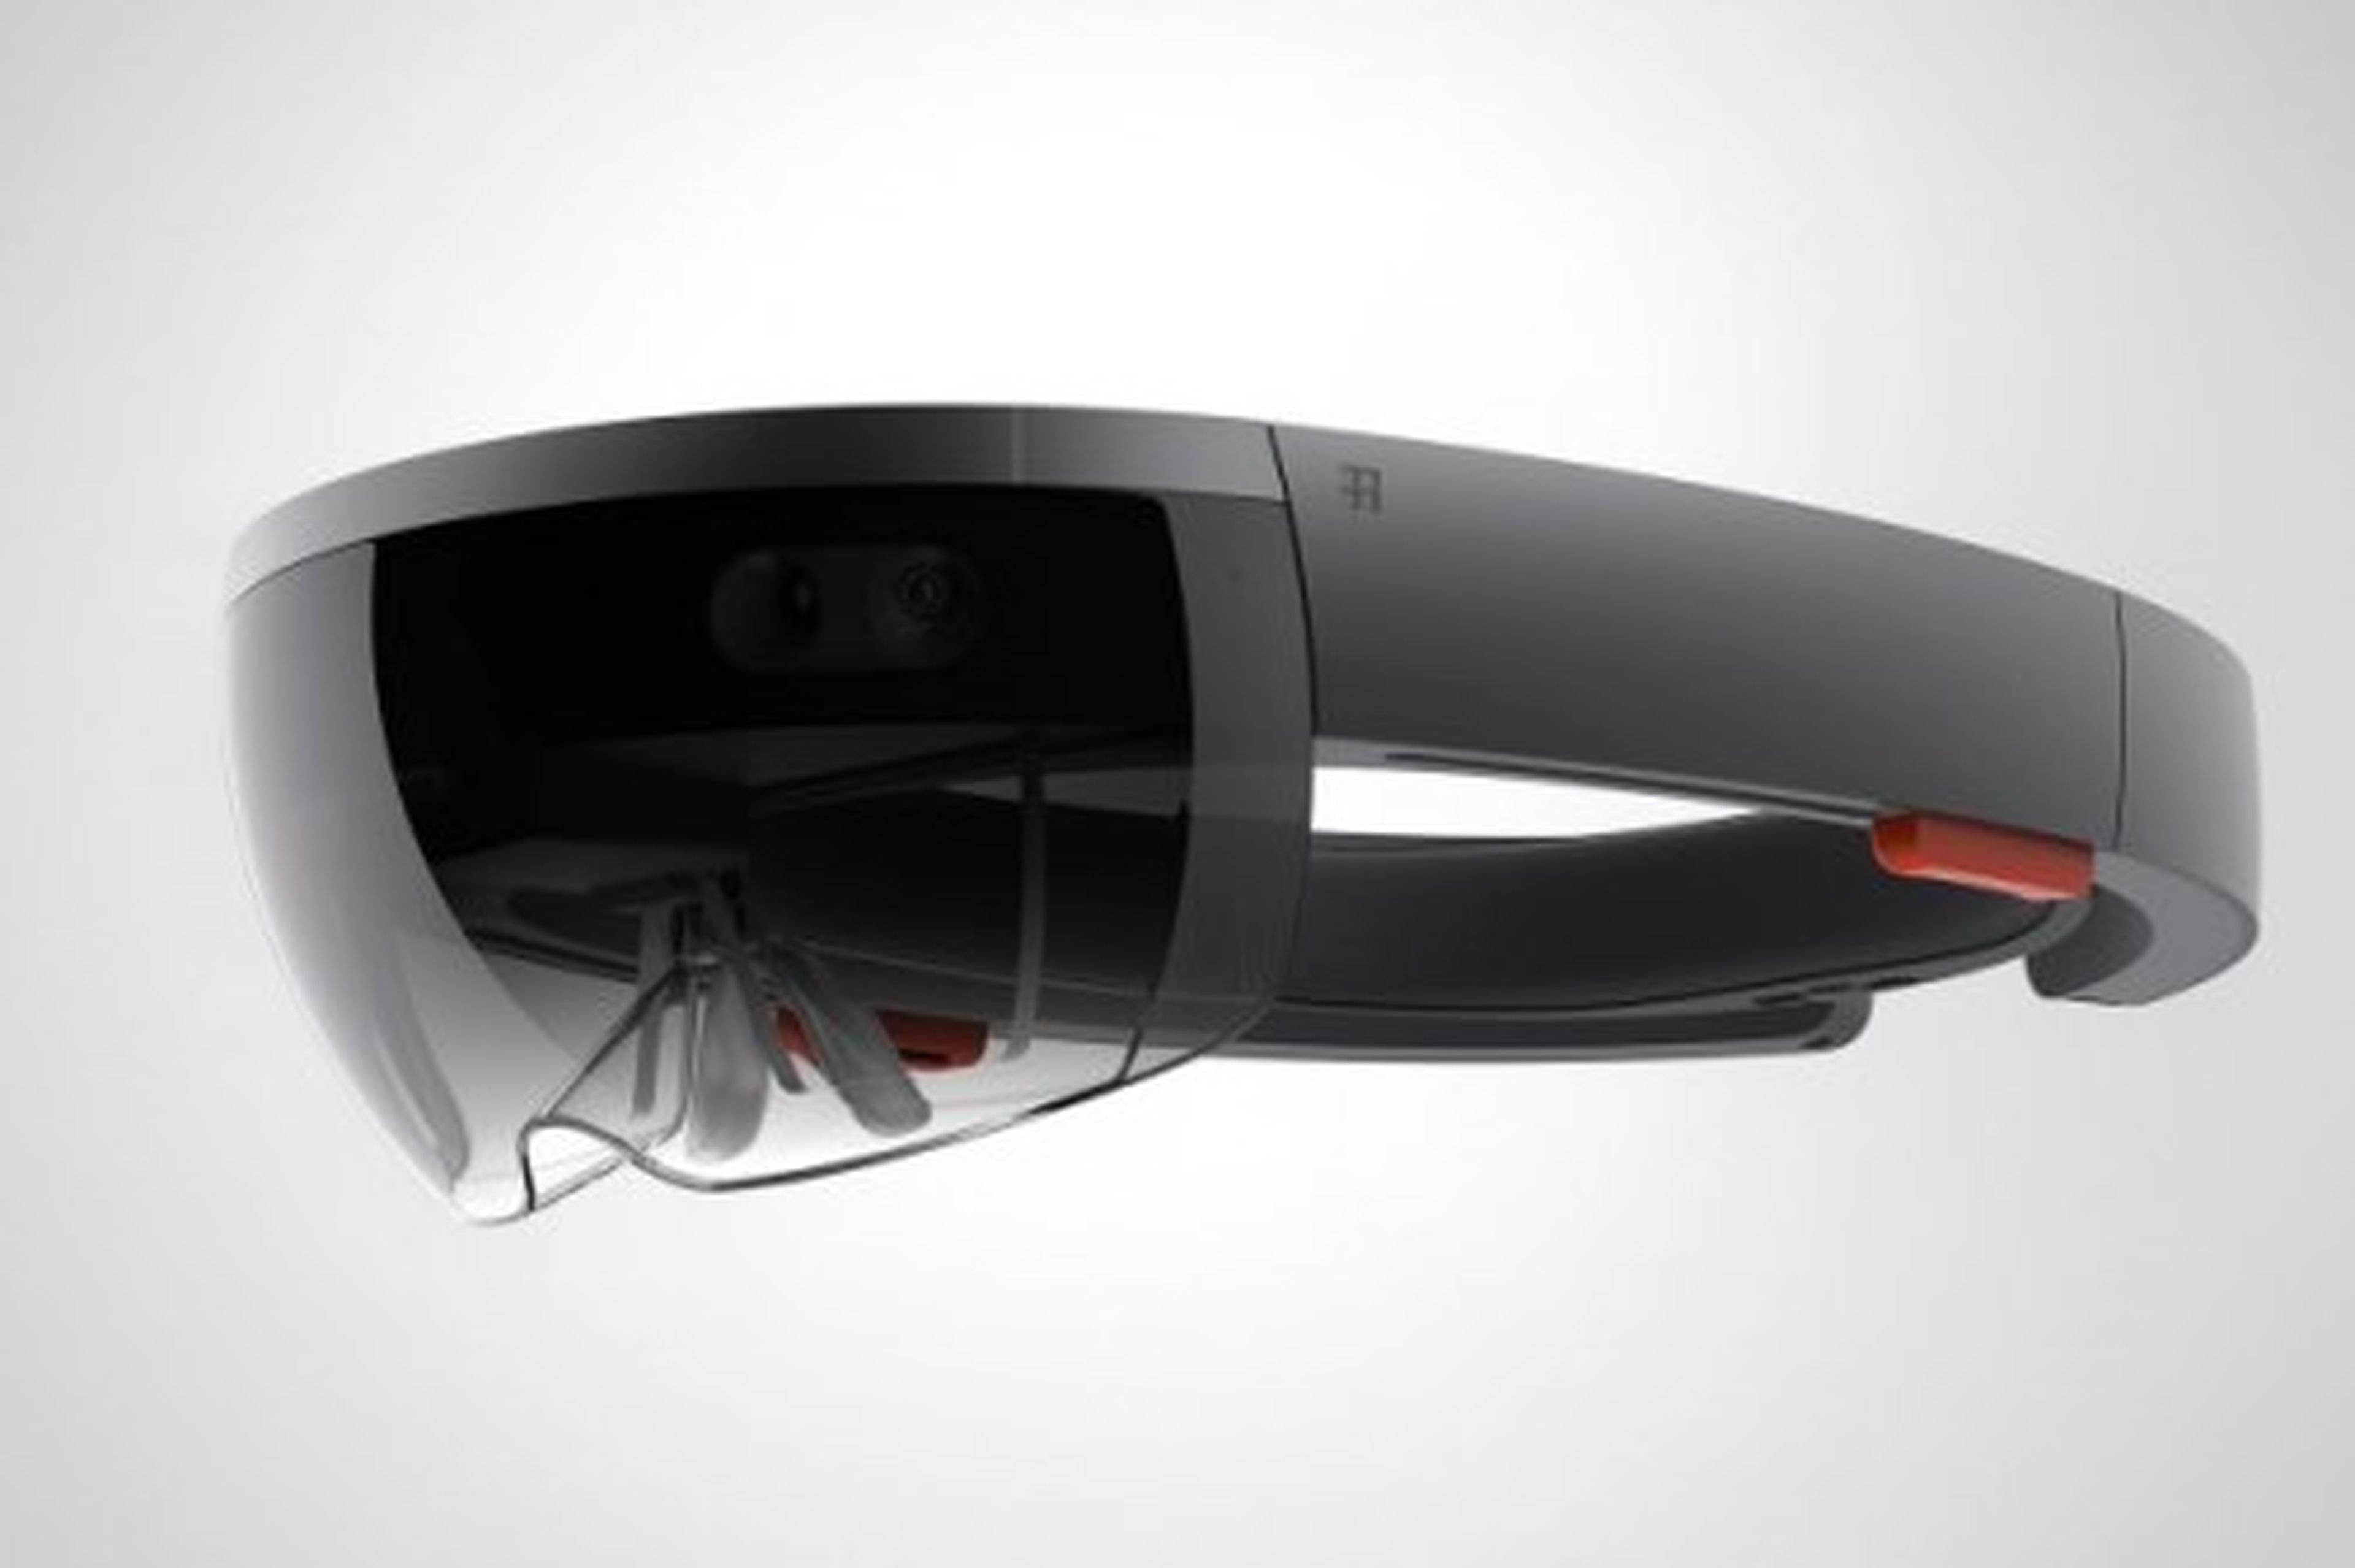 Hololens, las gafas de Realidad aumentada de Microsoft. Reserva y juegos